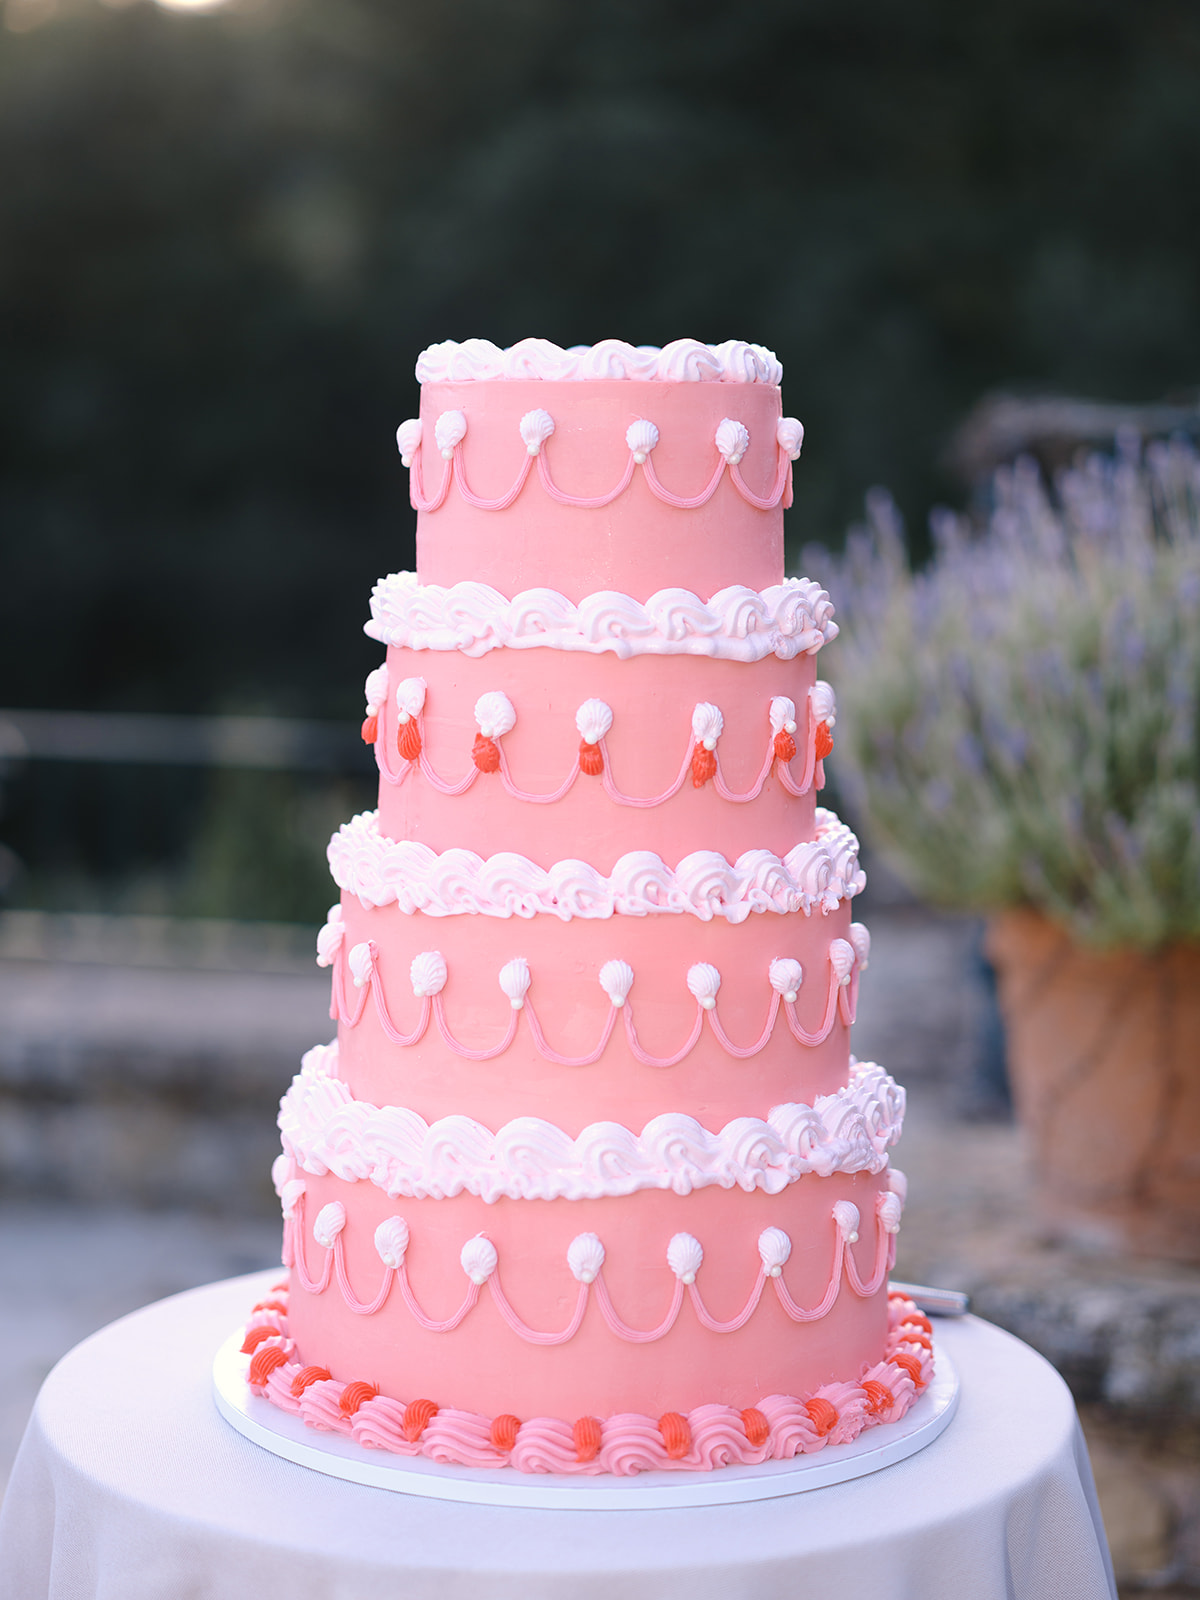 Pink vintage wedding cake